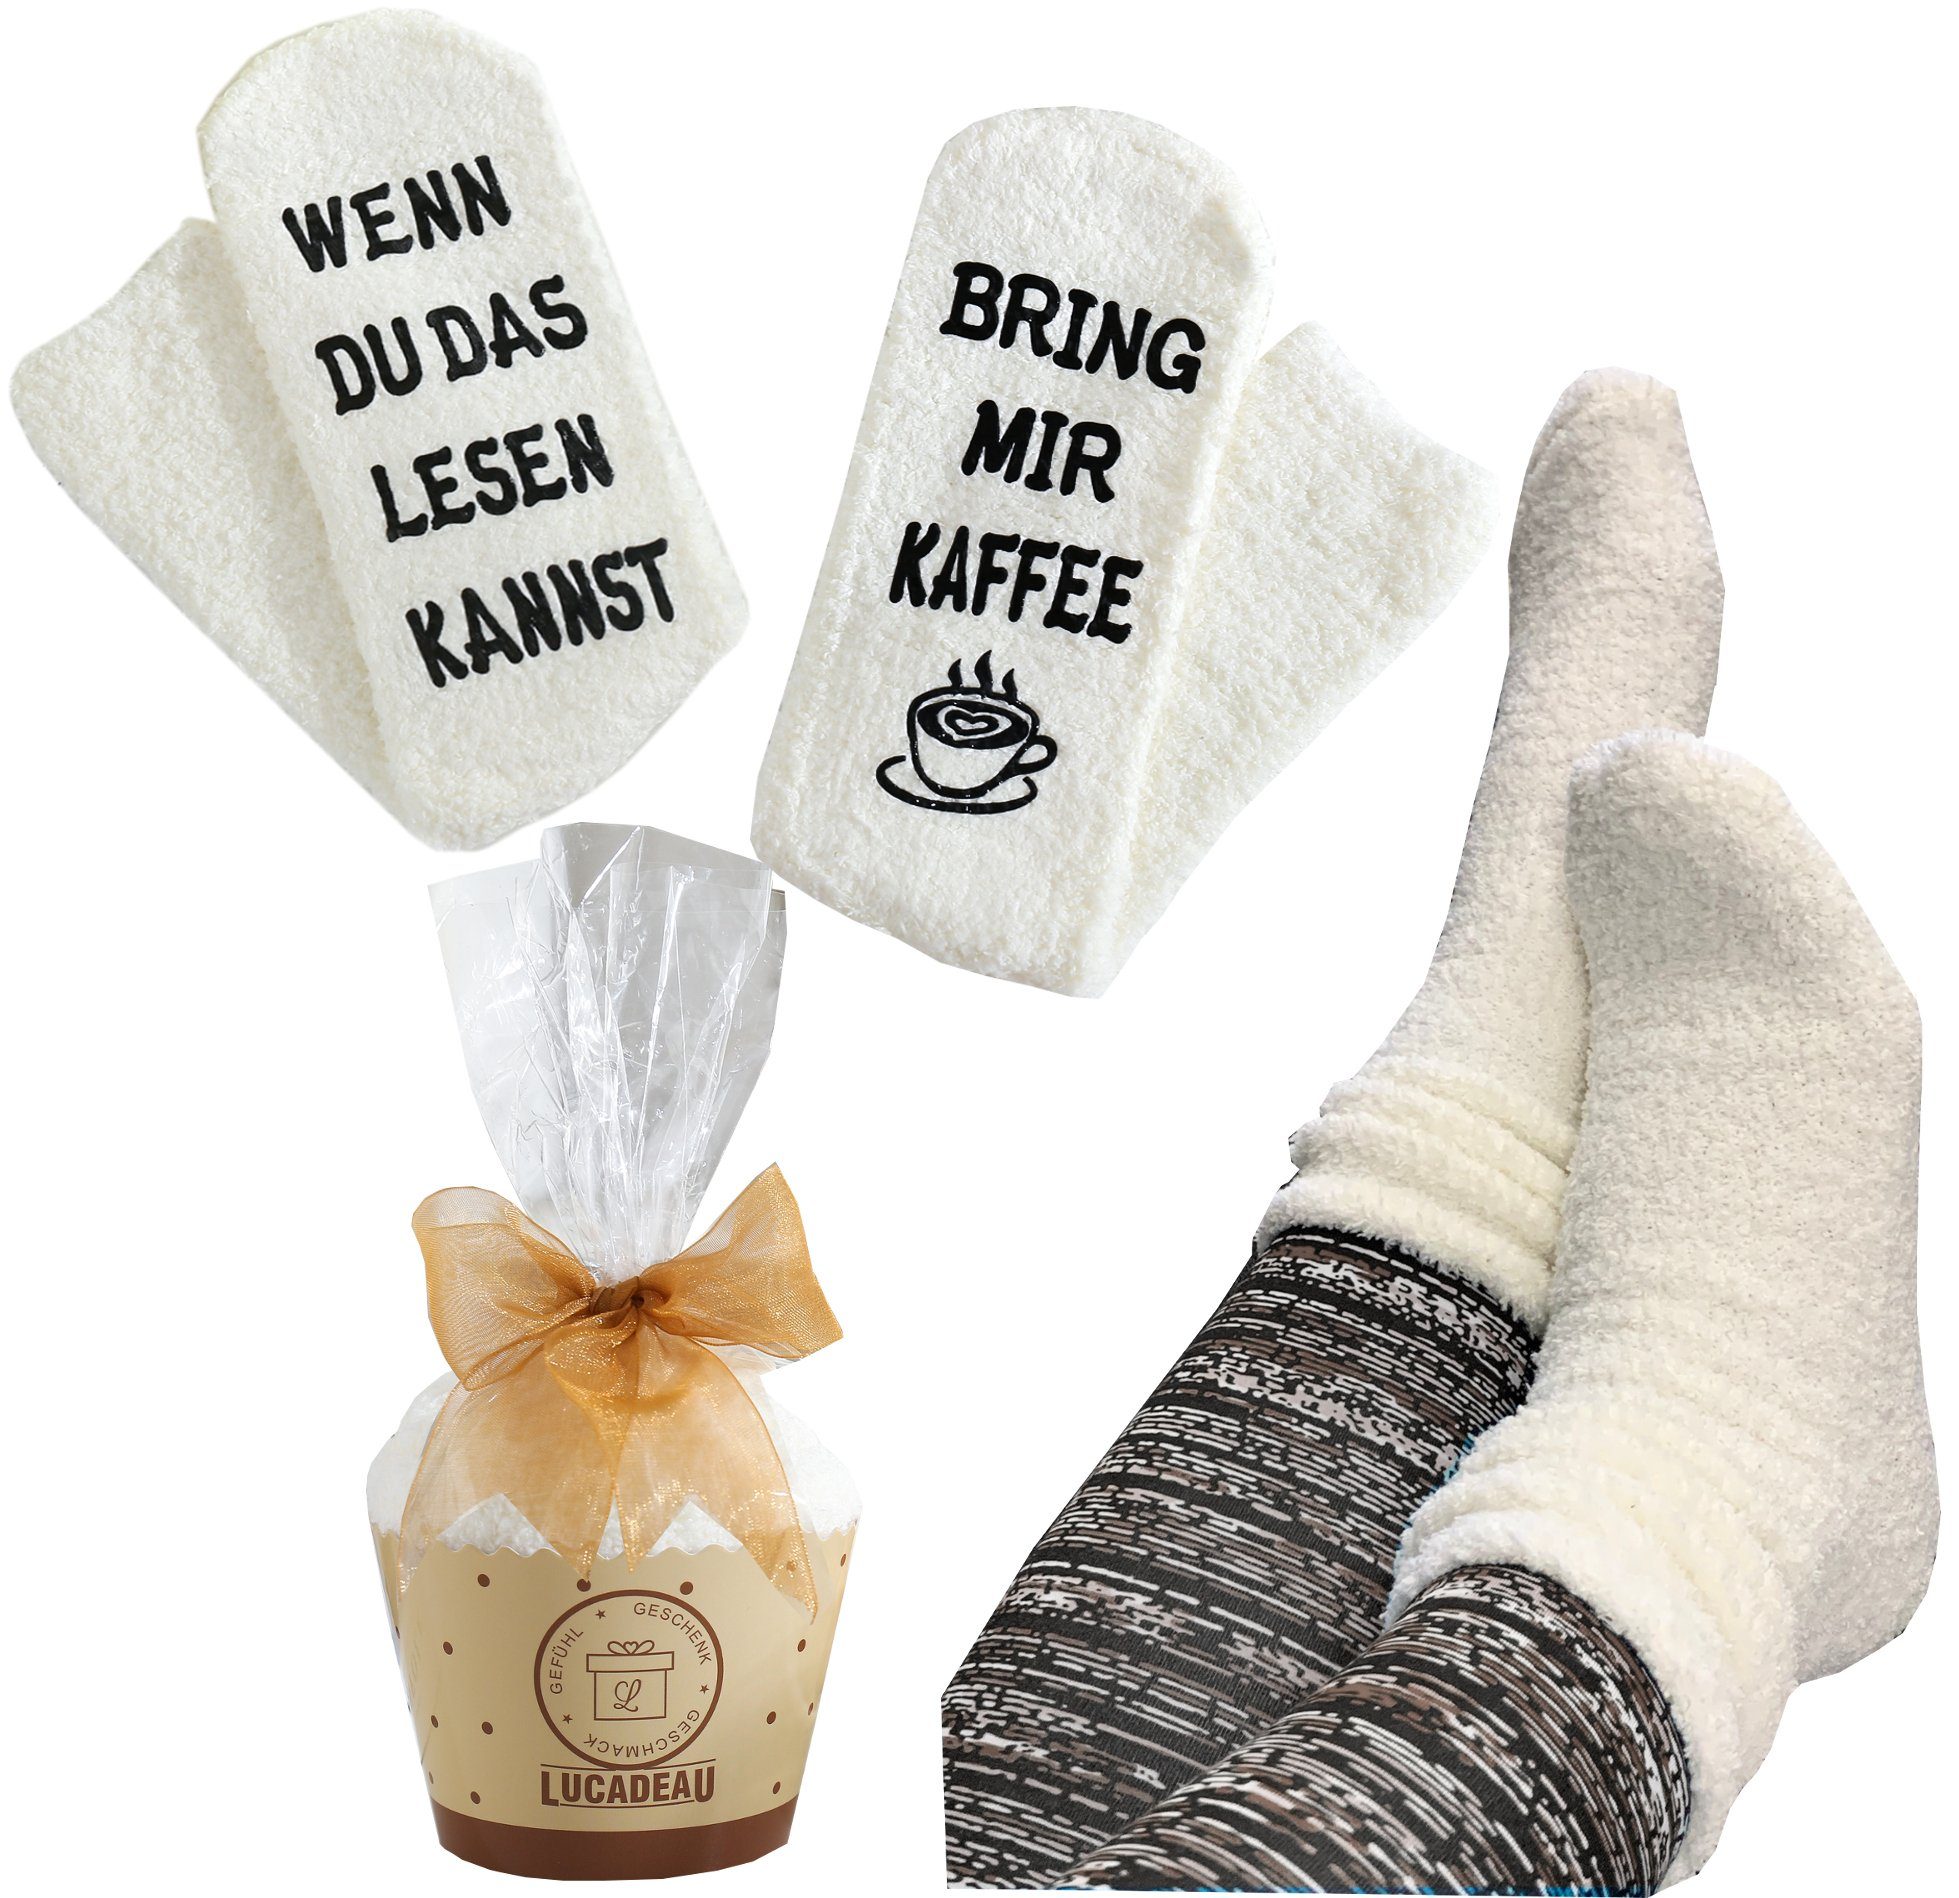 Lucadeau Kuschelsocken mit Spruch "Wenn du das lesen kannst, bring mir Kaffee" (Cupcake Verpackung, 1 Paar) rutschfest, Gr. 36-43, Weihnachtsgeschenke creme